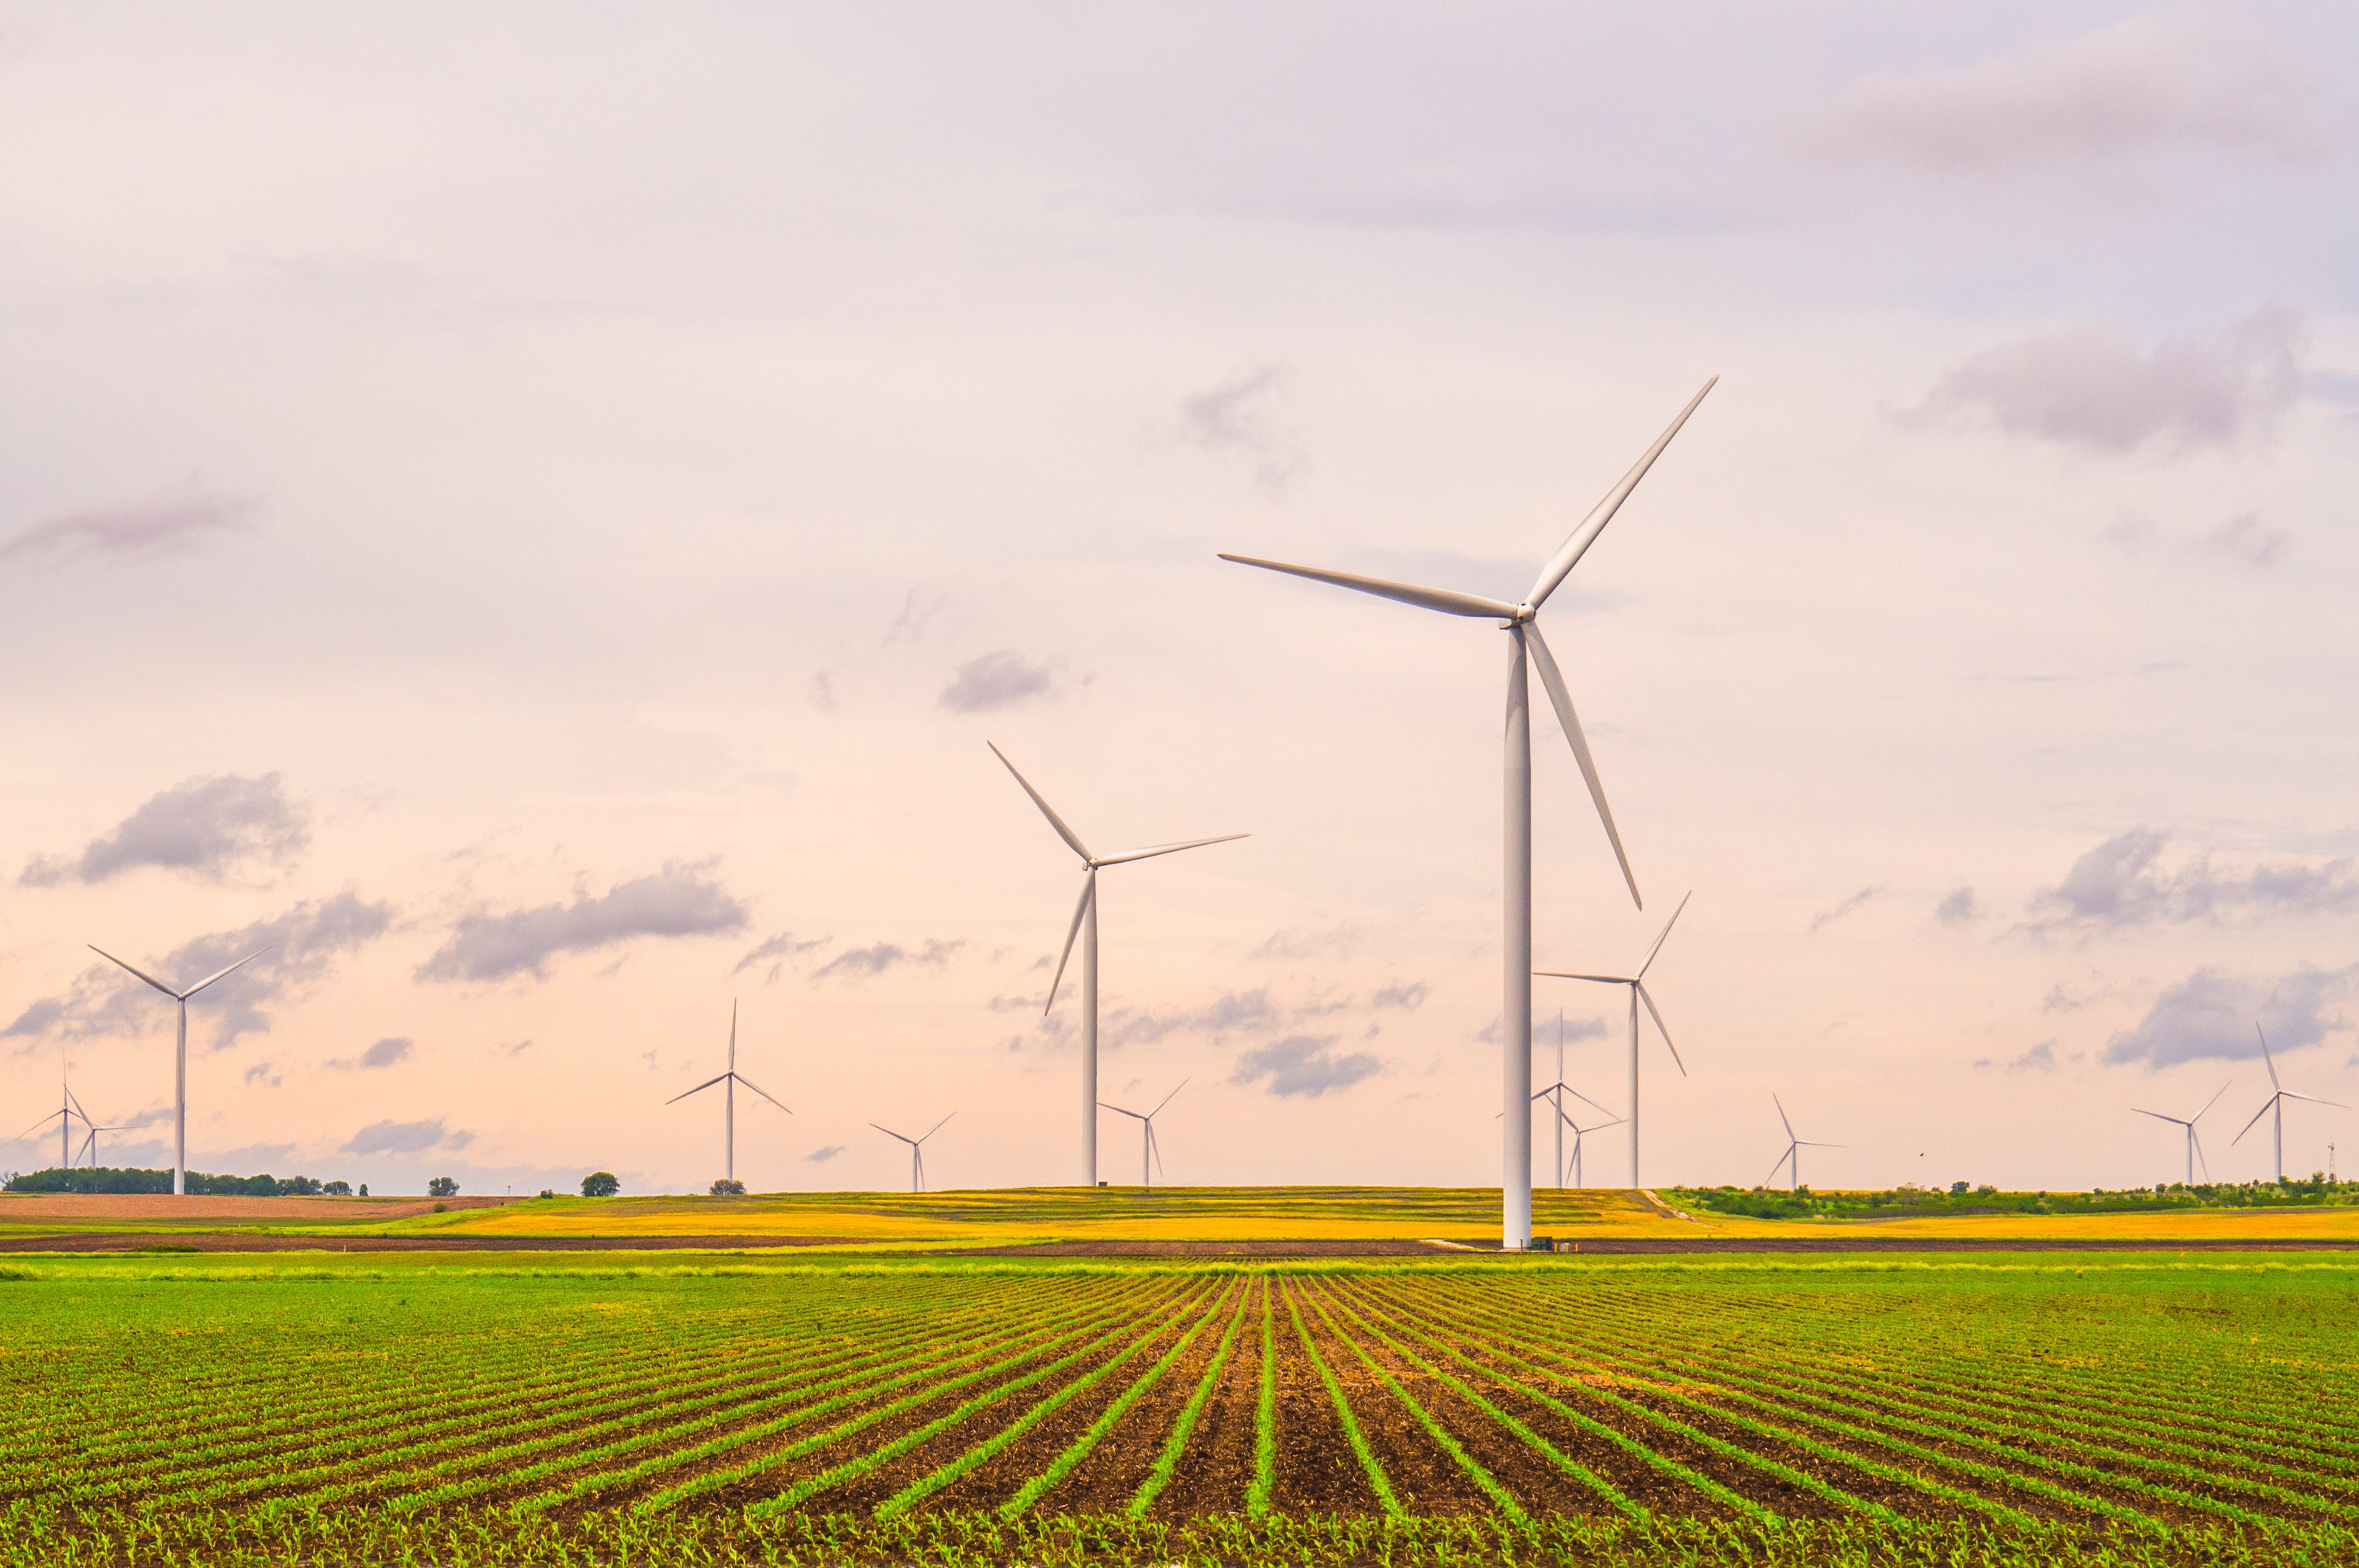 Wind renewable energy project